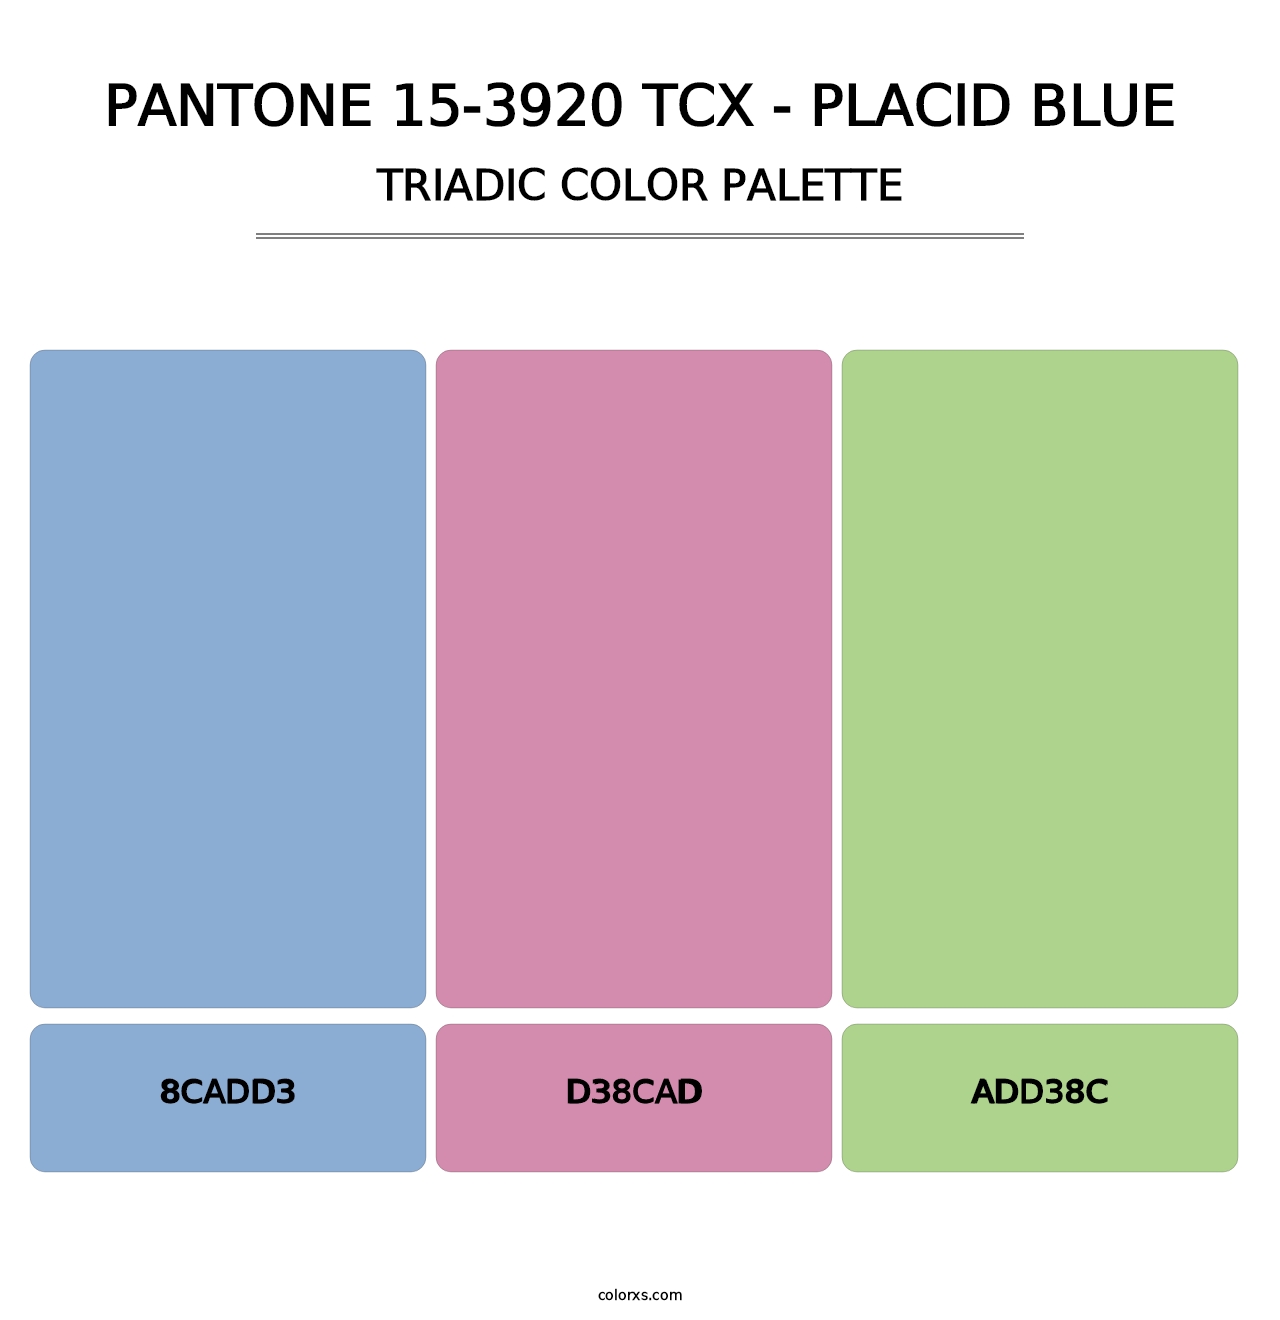 PANTONE 15-3920 TCX - Placid Blue - Triadic Color Palette